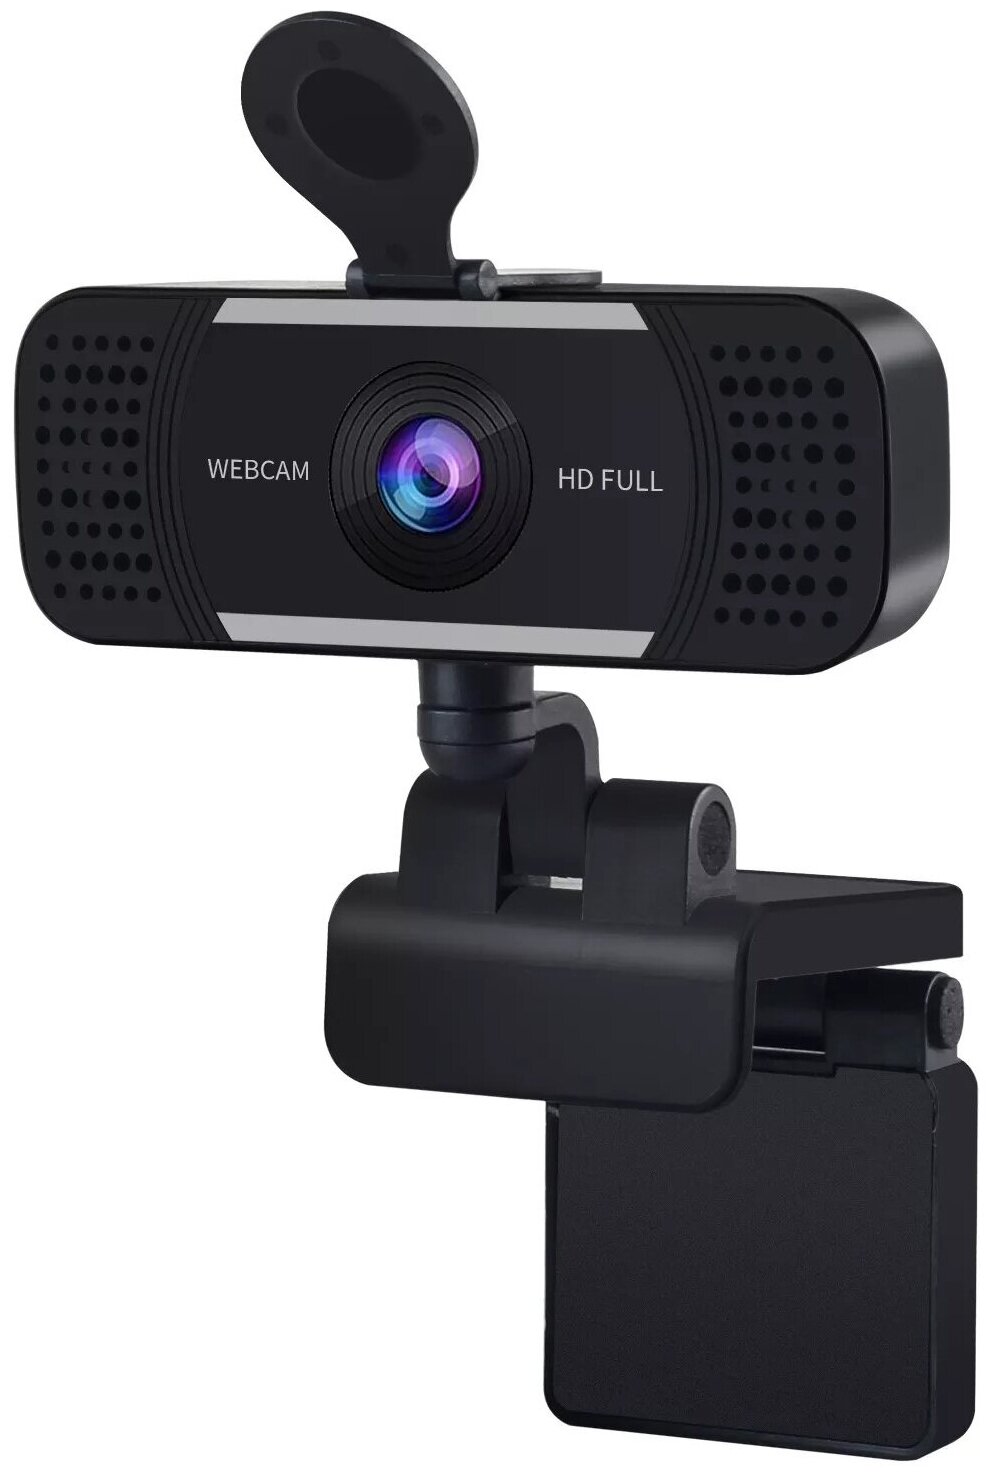 Usb камера 2K Full HD для компьютера HDcom Zoom W18-2K - камера для youtube. Автофокус - автоматическая наводка объектива